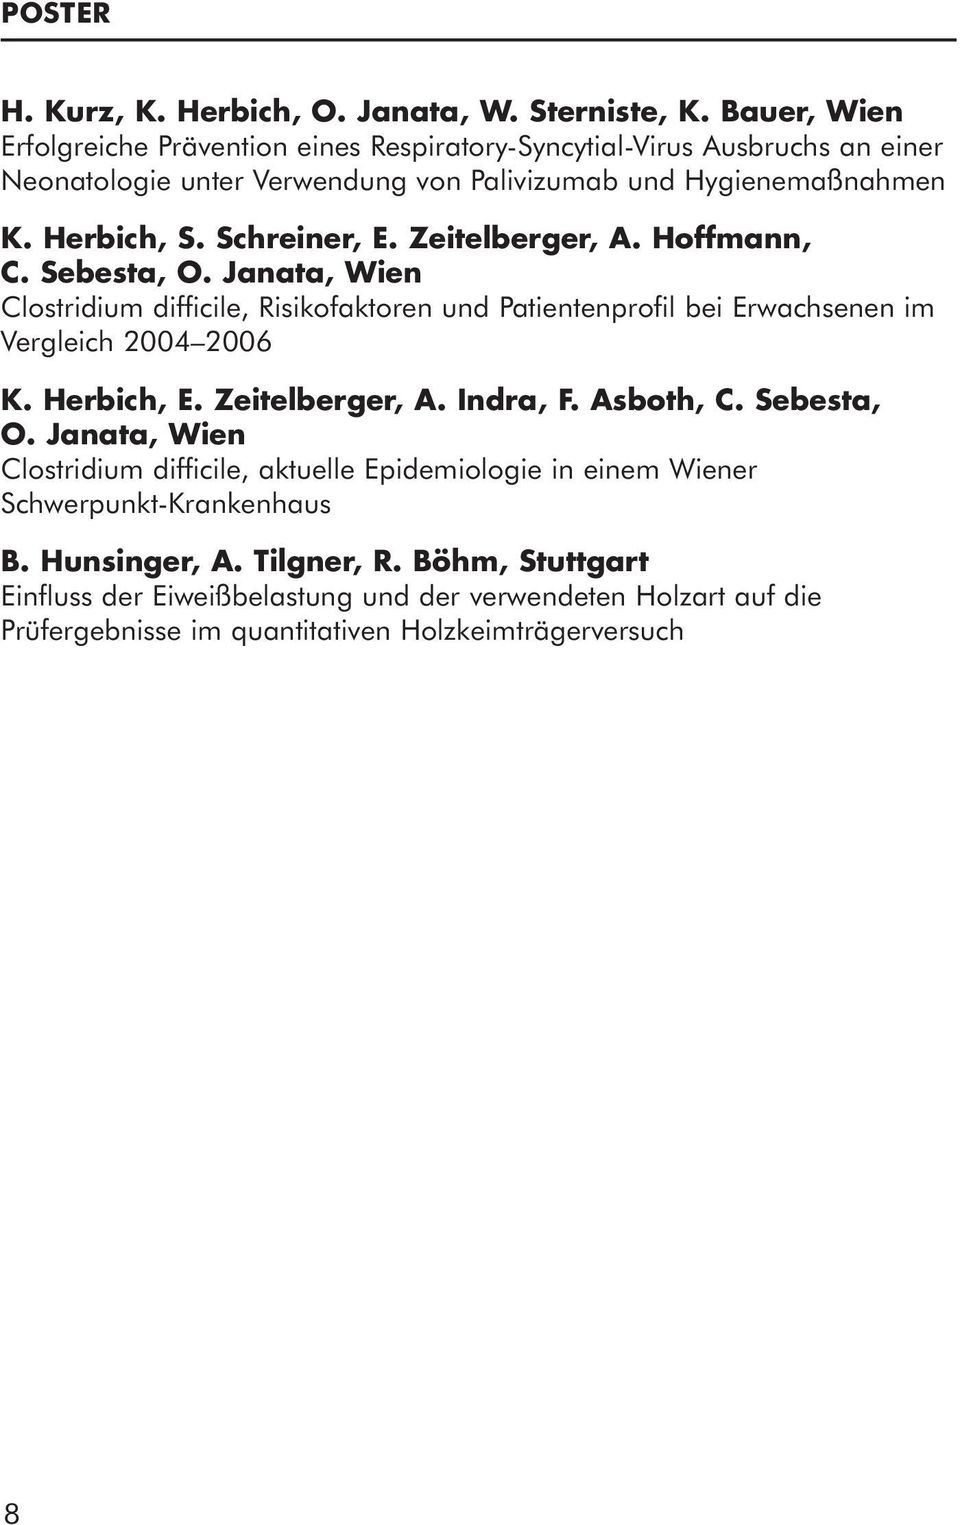 Schreiner, E. Zeitelberger, A. Hoffmann, C. Sebesta, O. Janata, Wien Clostridium difficile, Risikofaktoren und Patientenprofil bei Erwachsenen im Vergleich 2004 2006 K. Herbich, E.